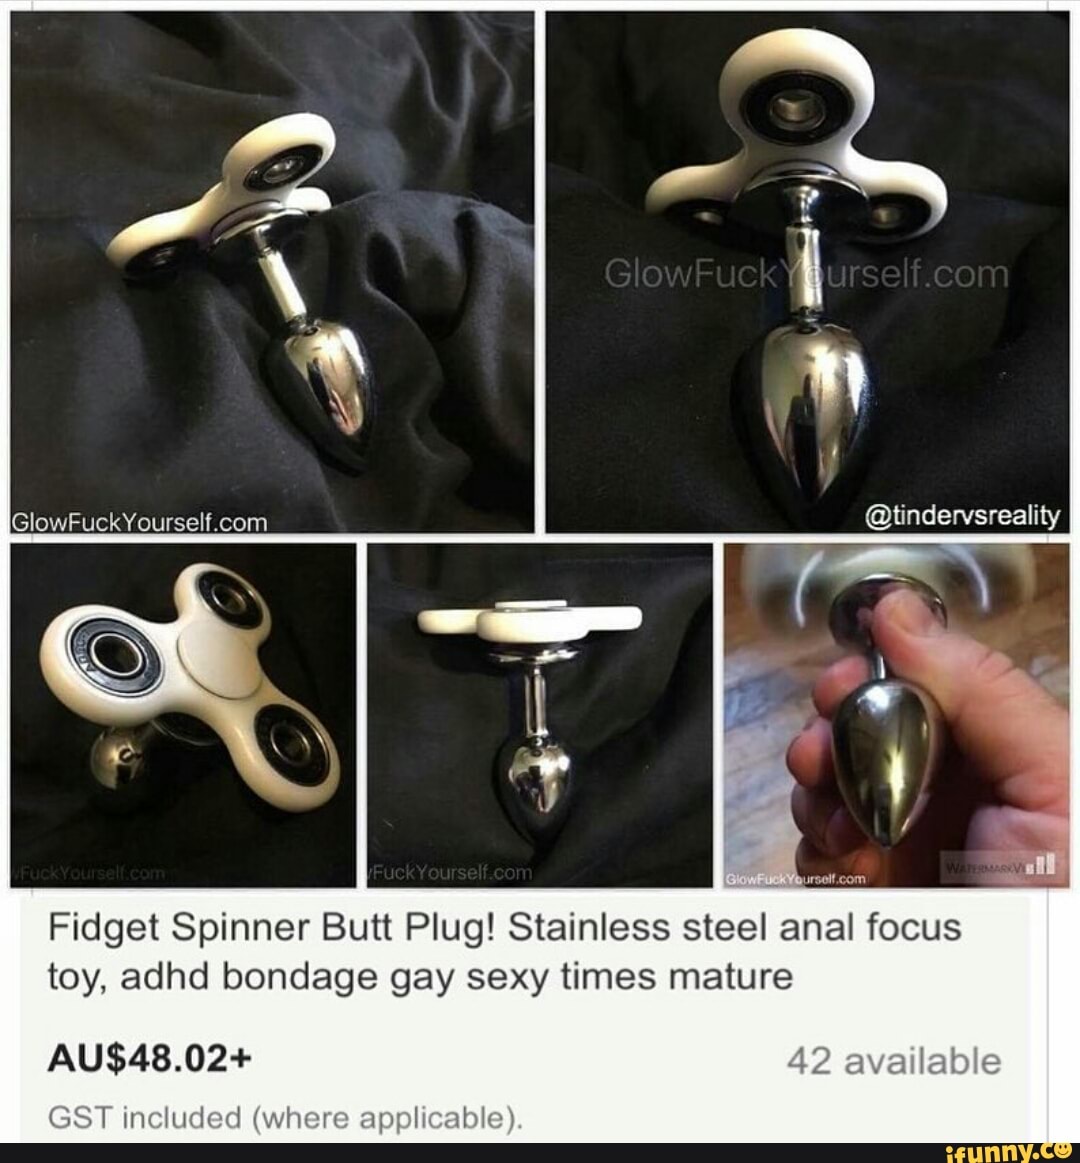 Figet spinner butt plug